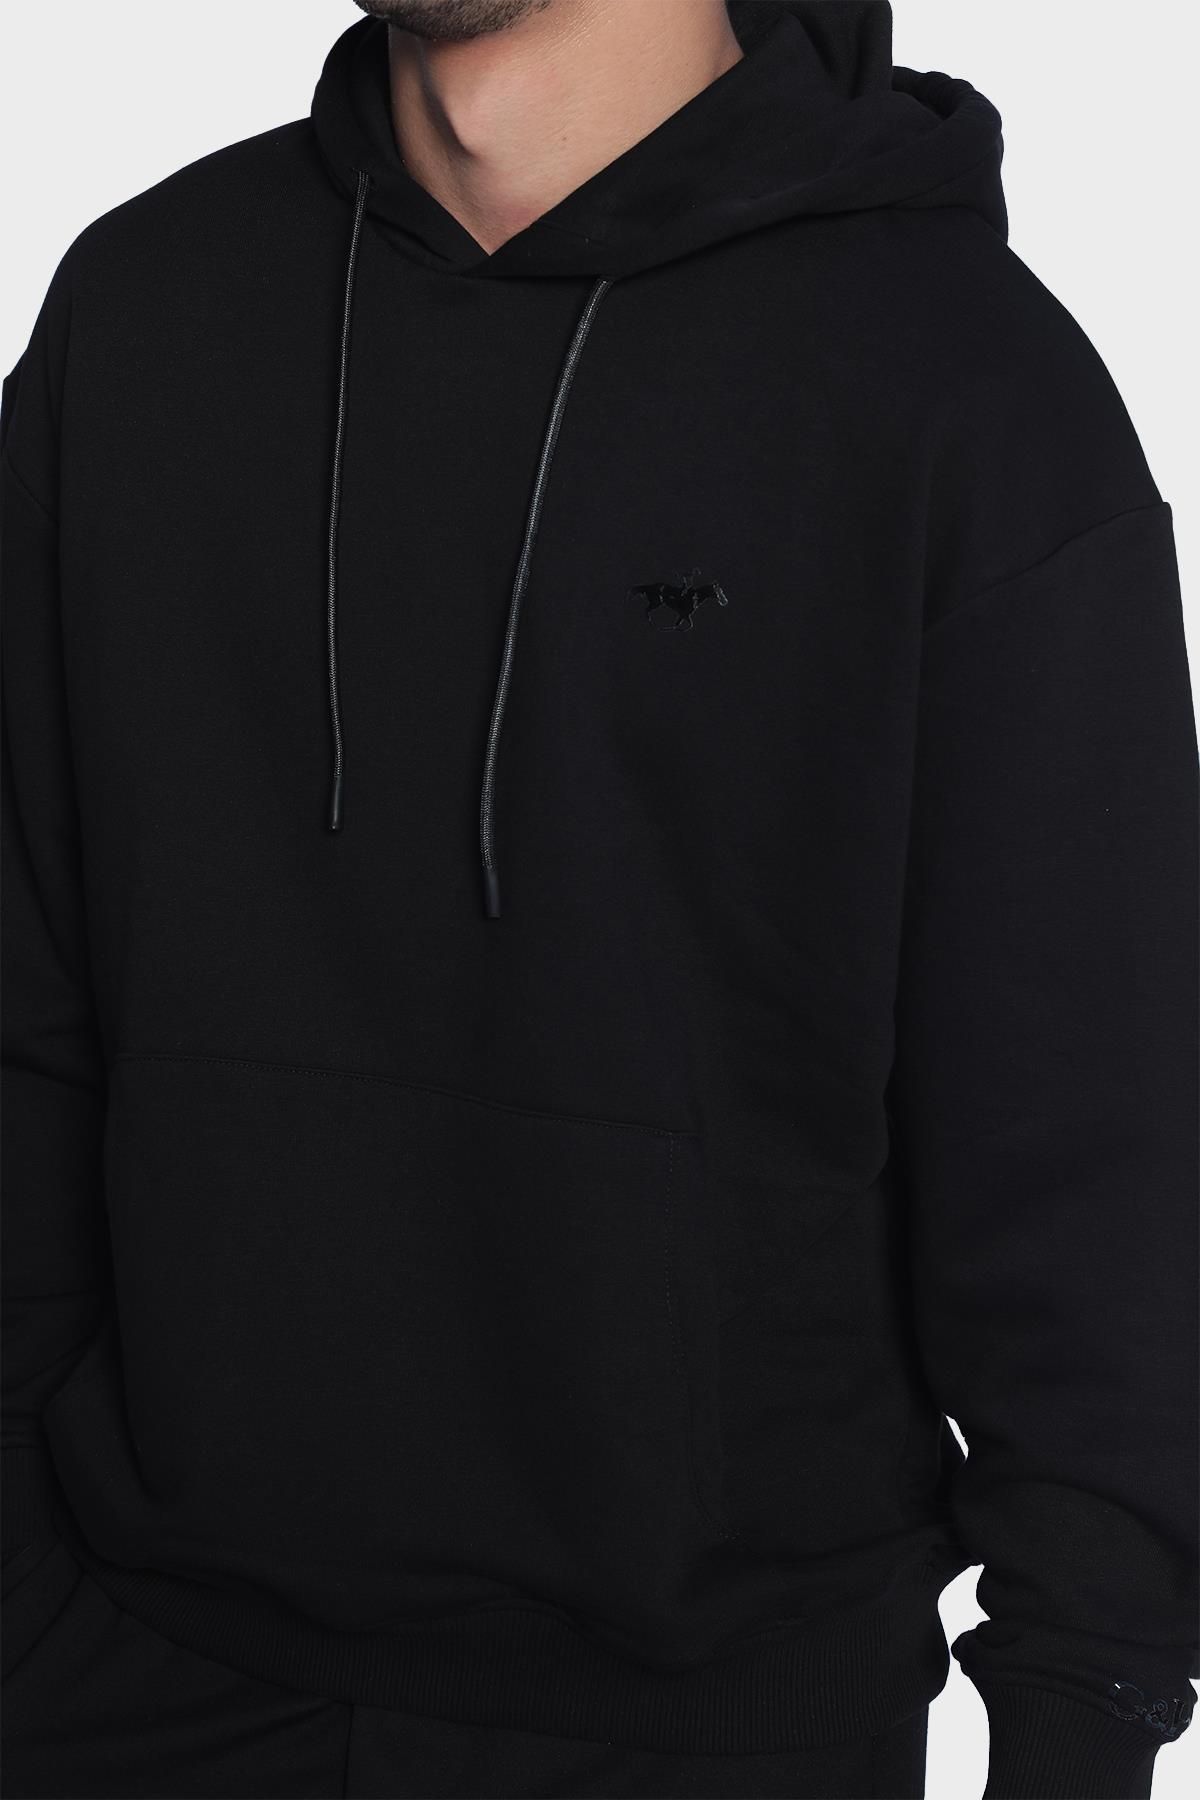 Mens Hooded and Long Sleeve Sweatshirt - Black